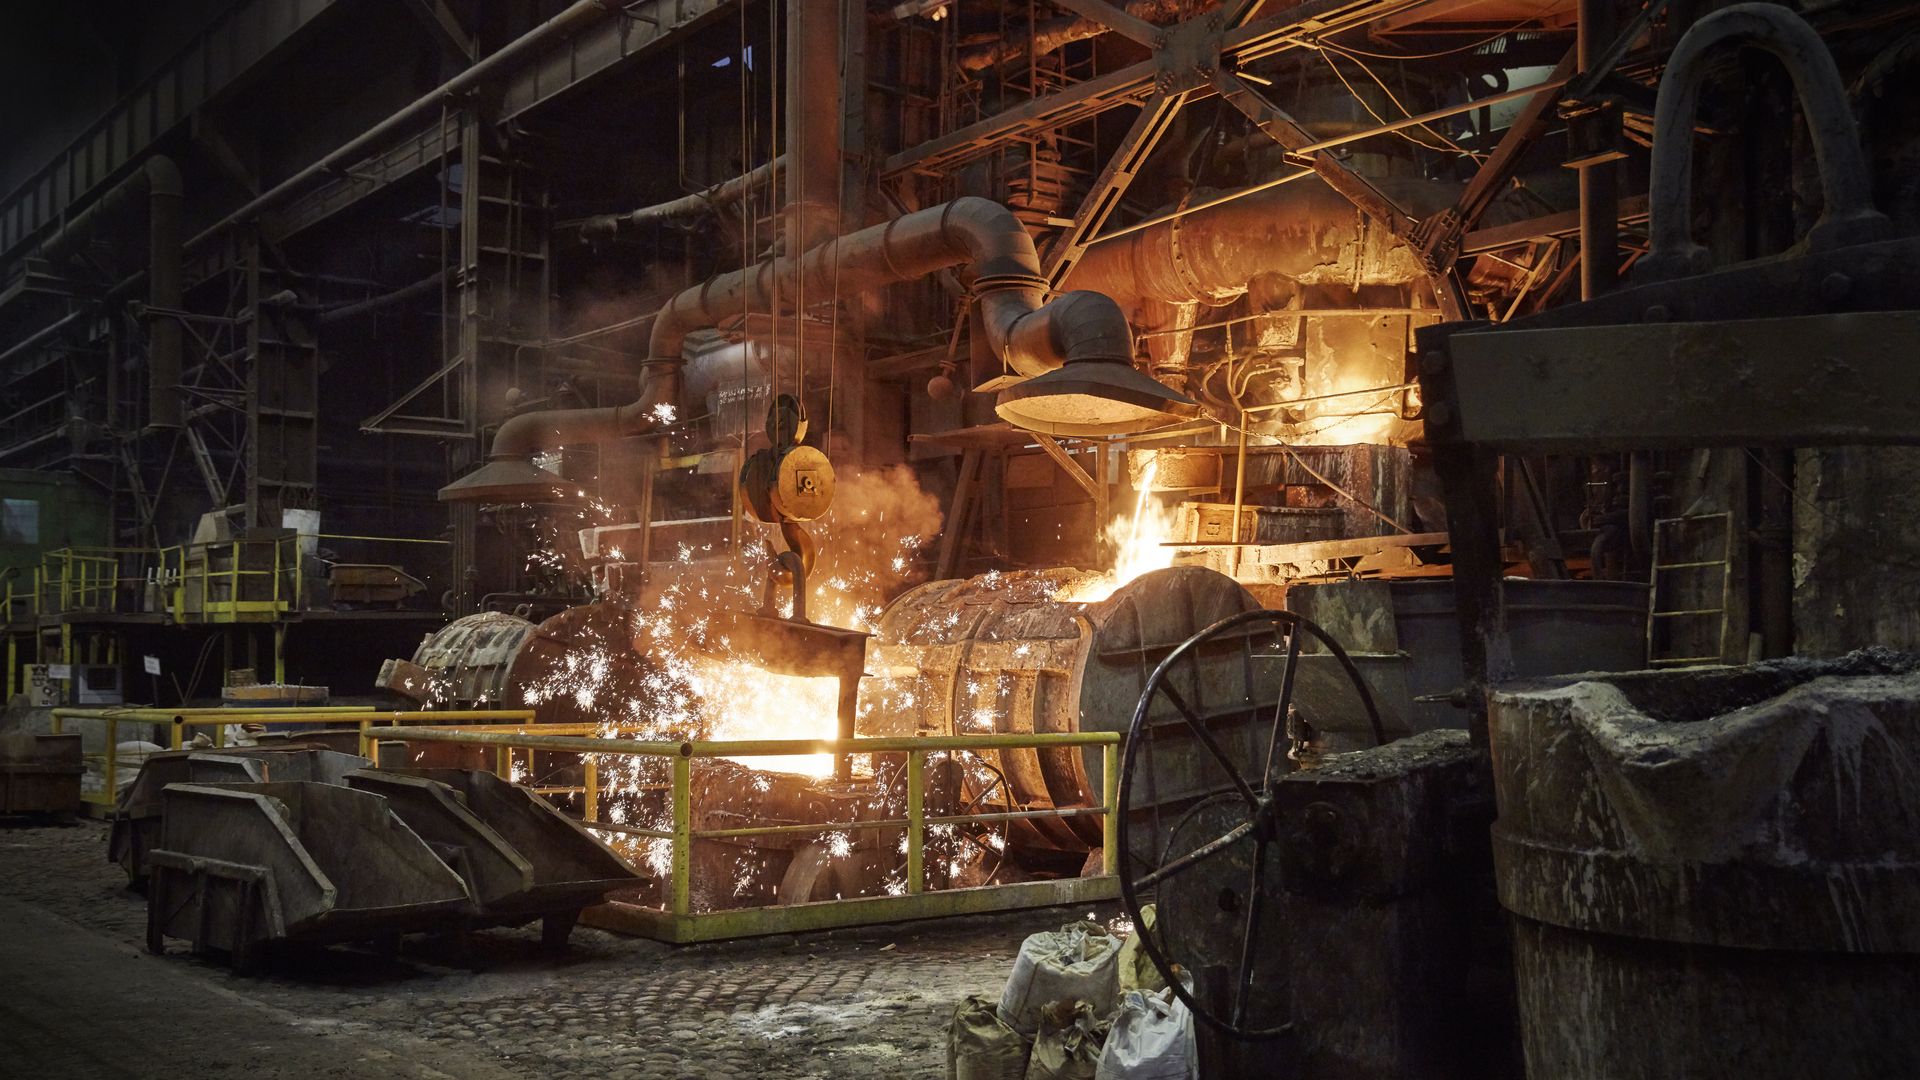 Molten furnace in a steel mill